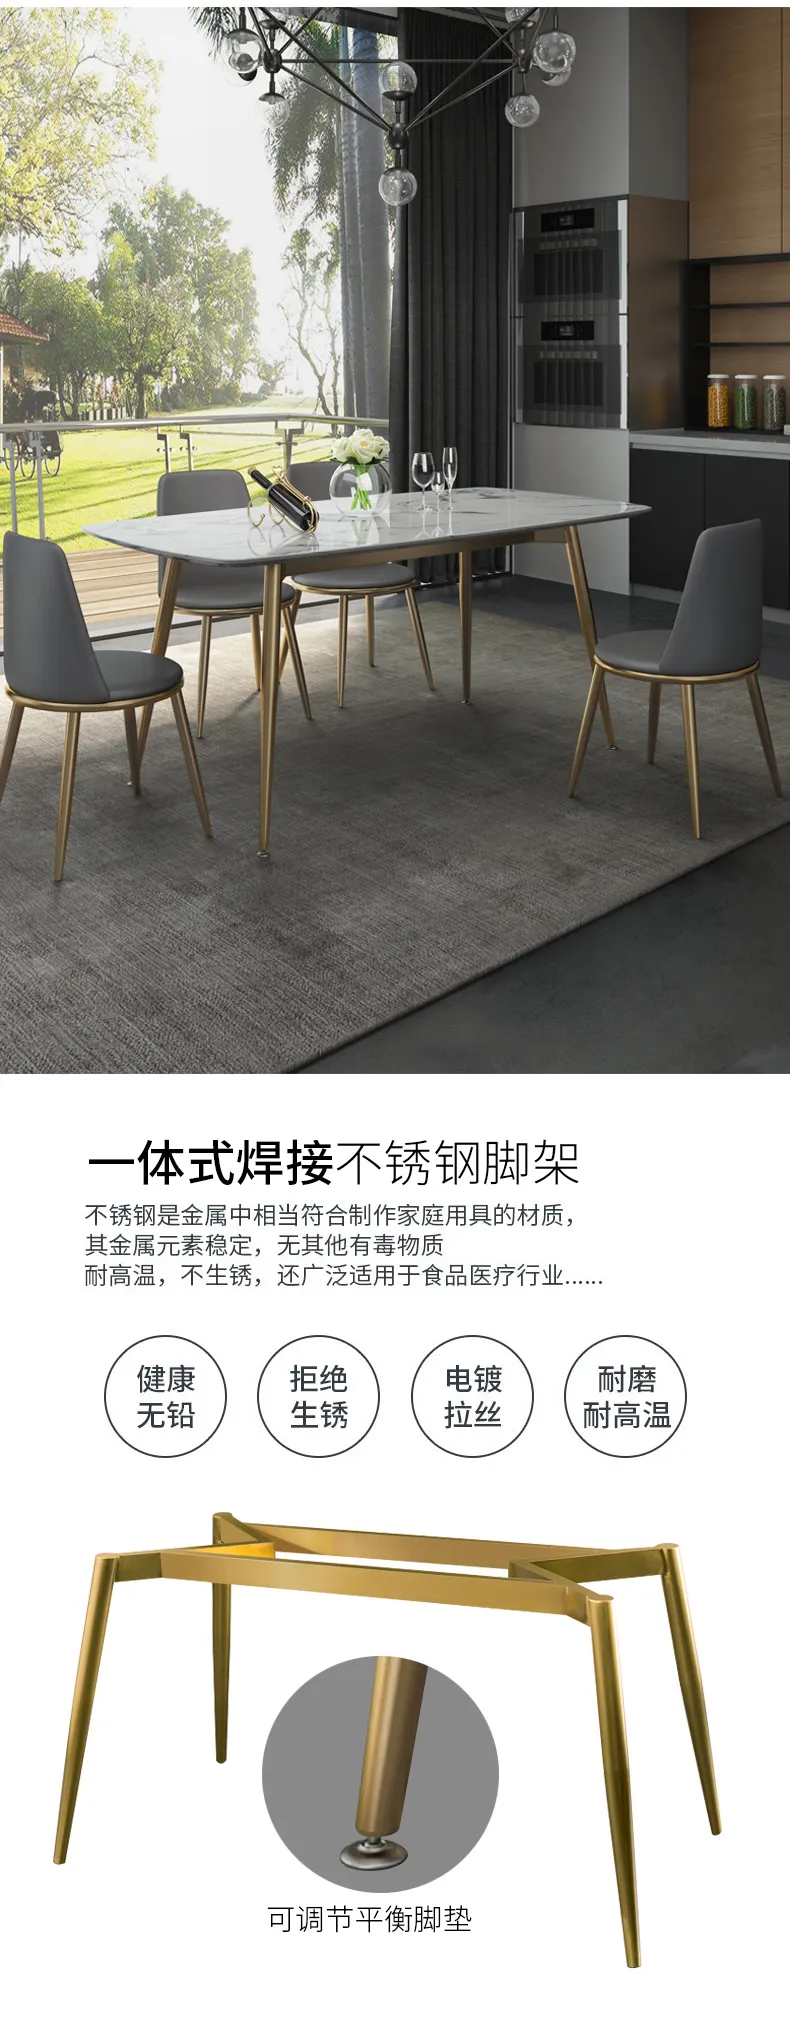 华松居 意式轻奢现代简约大理石餐桌椅组合家具 CT816-29#(图4)